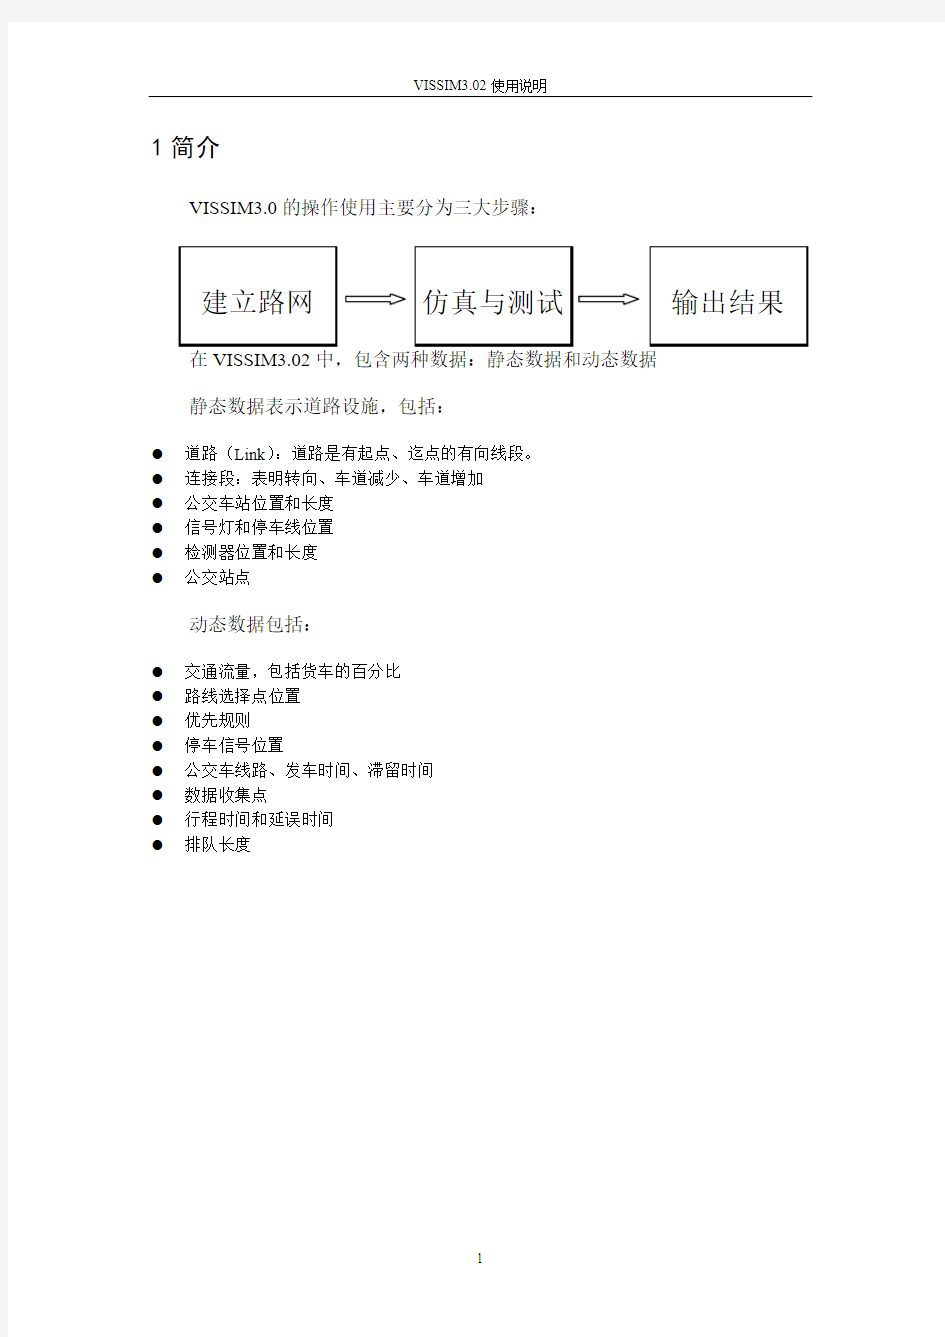 VISSIM3.7中文使用手册(使用说明)